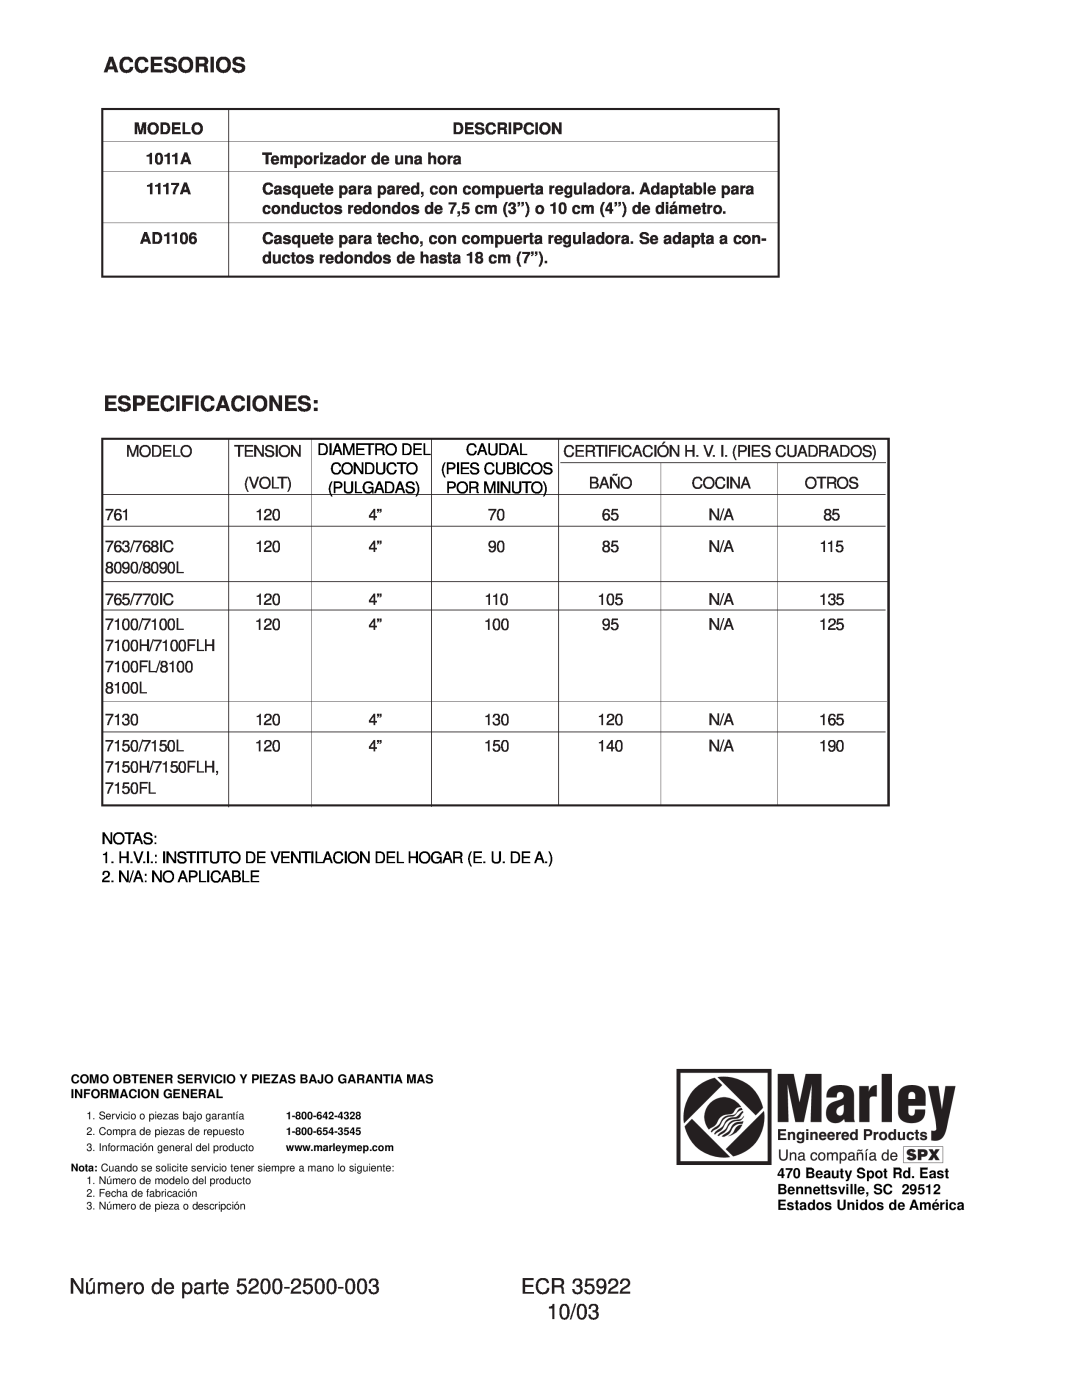 Marley Engineered Products 763, 761, 7100FL, 8100 Accesorios, Especificaciones, Número de parte, 10/03, Modelo, Descripcion 